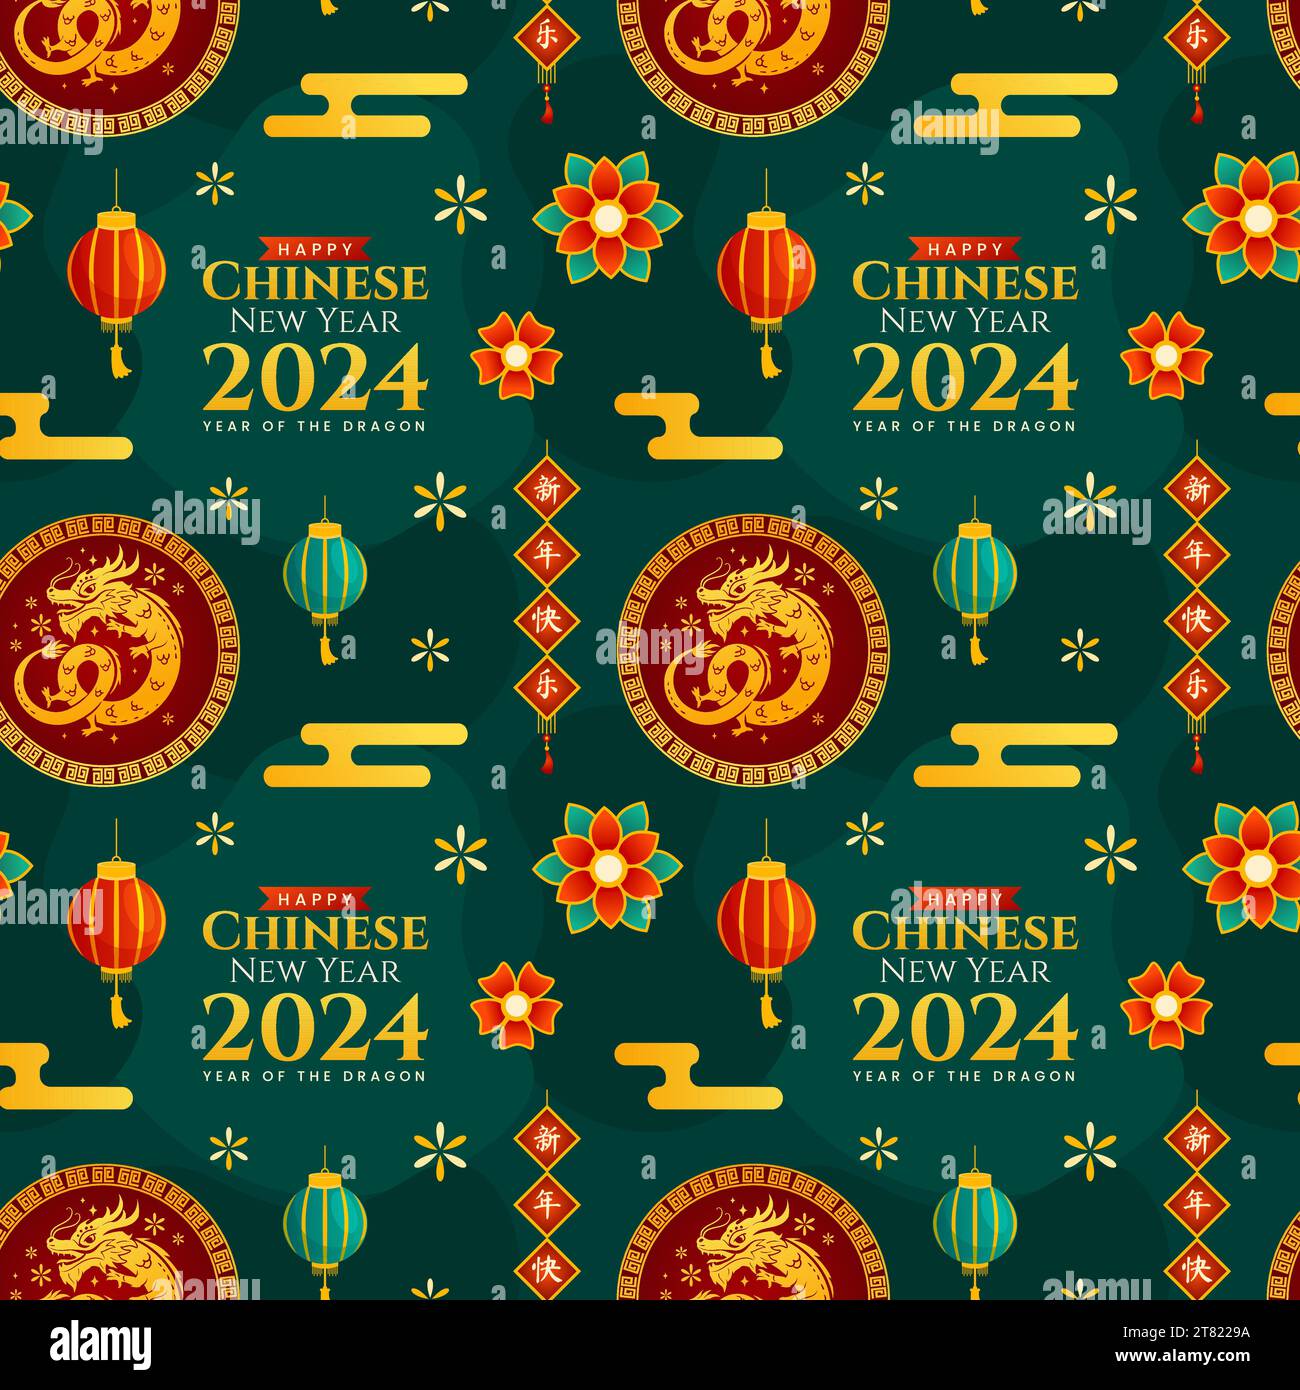 Joyeux nouvel an chinois 2024 Seamless Pattern Design. Traduction : année du Dragon. Avec Lantern, Dragons et éléments de Chine dans l'illustration plate Illustration de Vecteur